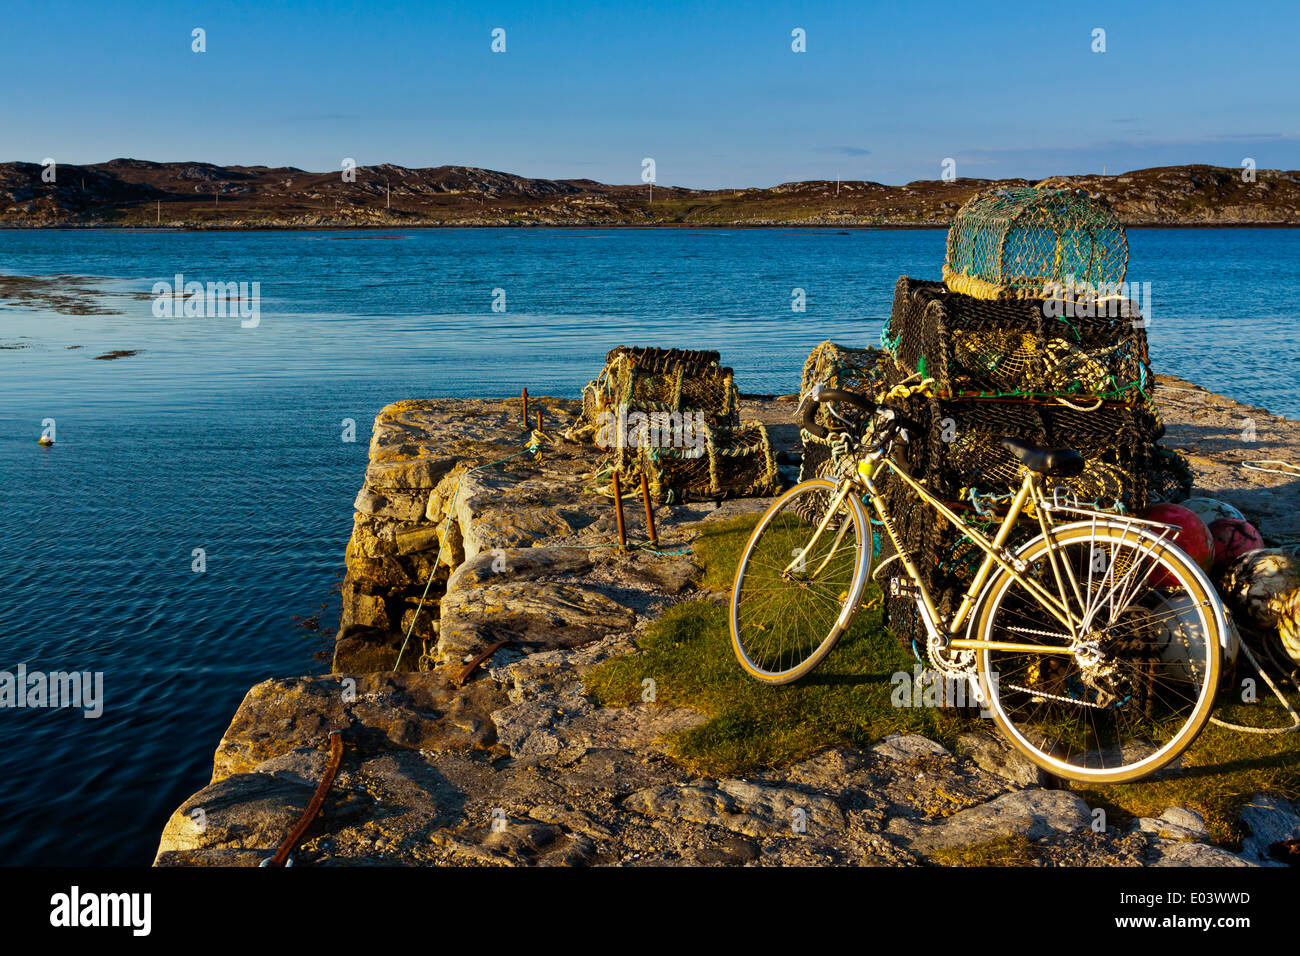 Il porto di Arinagour sull'Isola di Coll Ebridi Interne Argyll and Bute Scozia UK con la bici in appoggio contro gli attrezzi da pesca Foto Stock